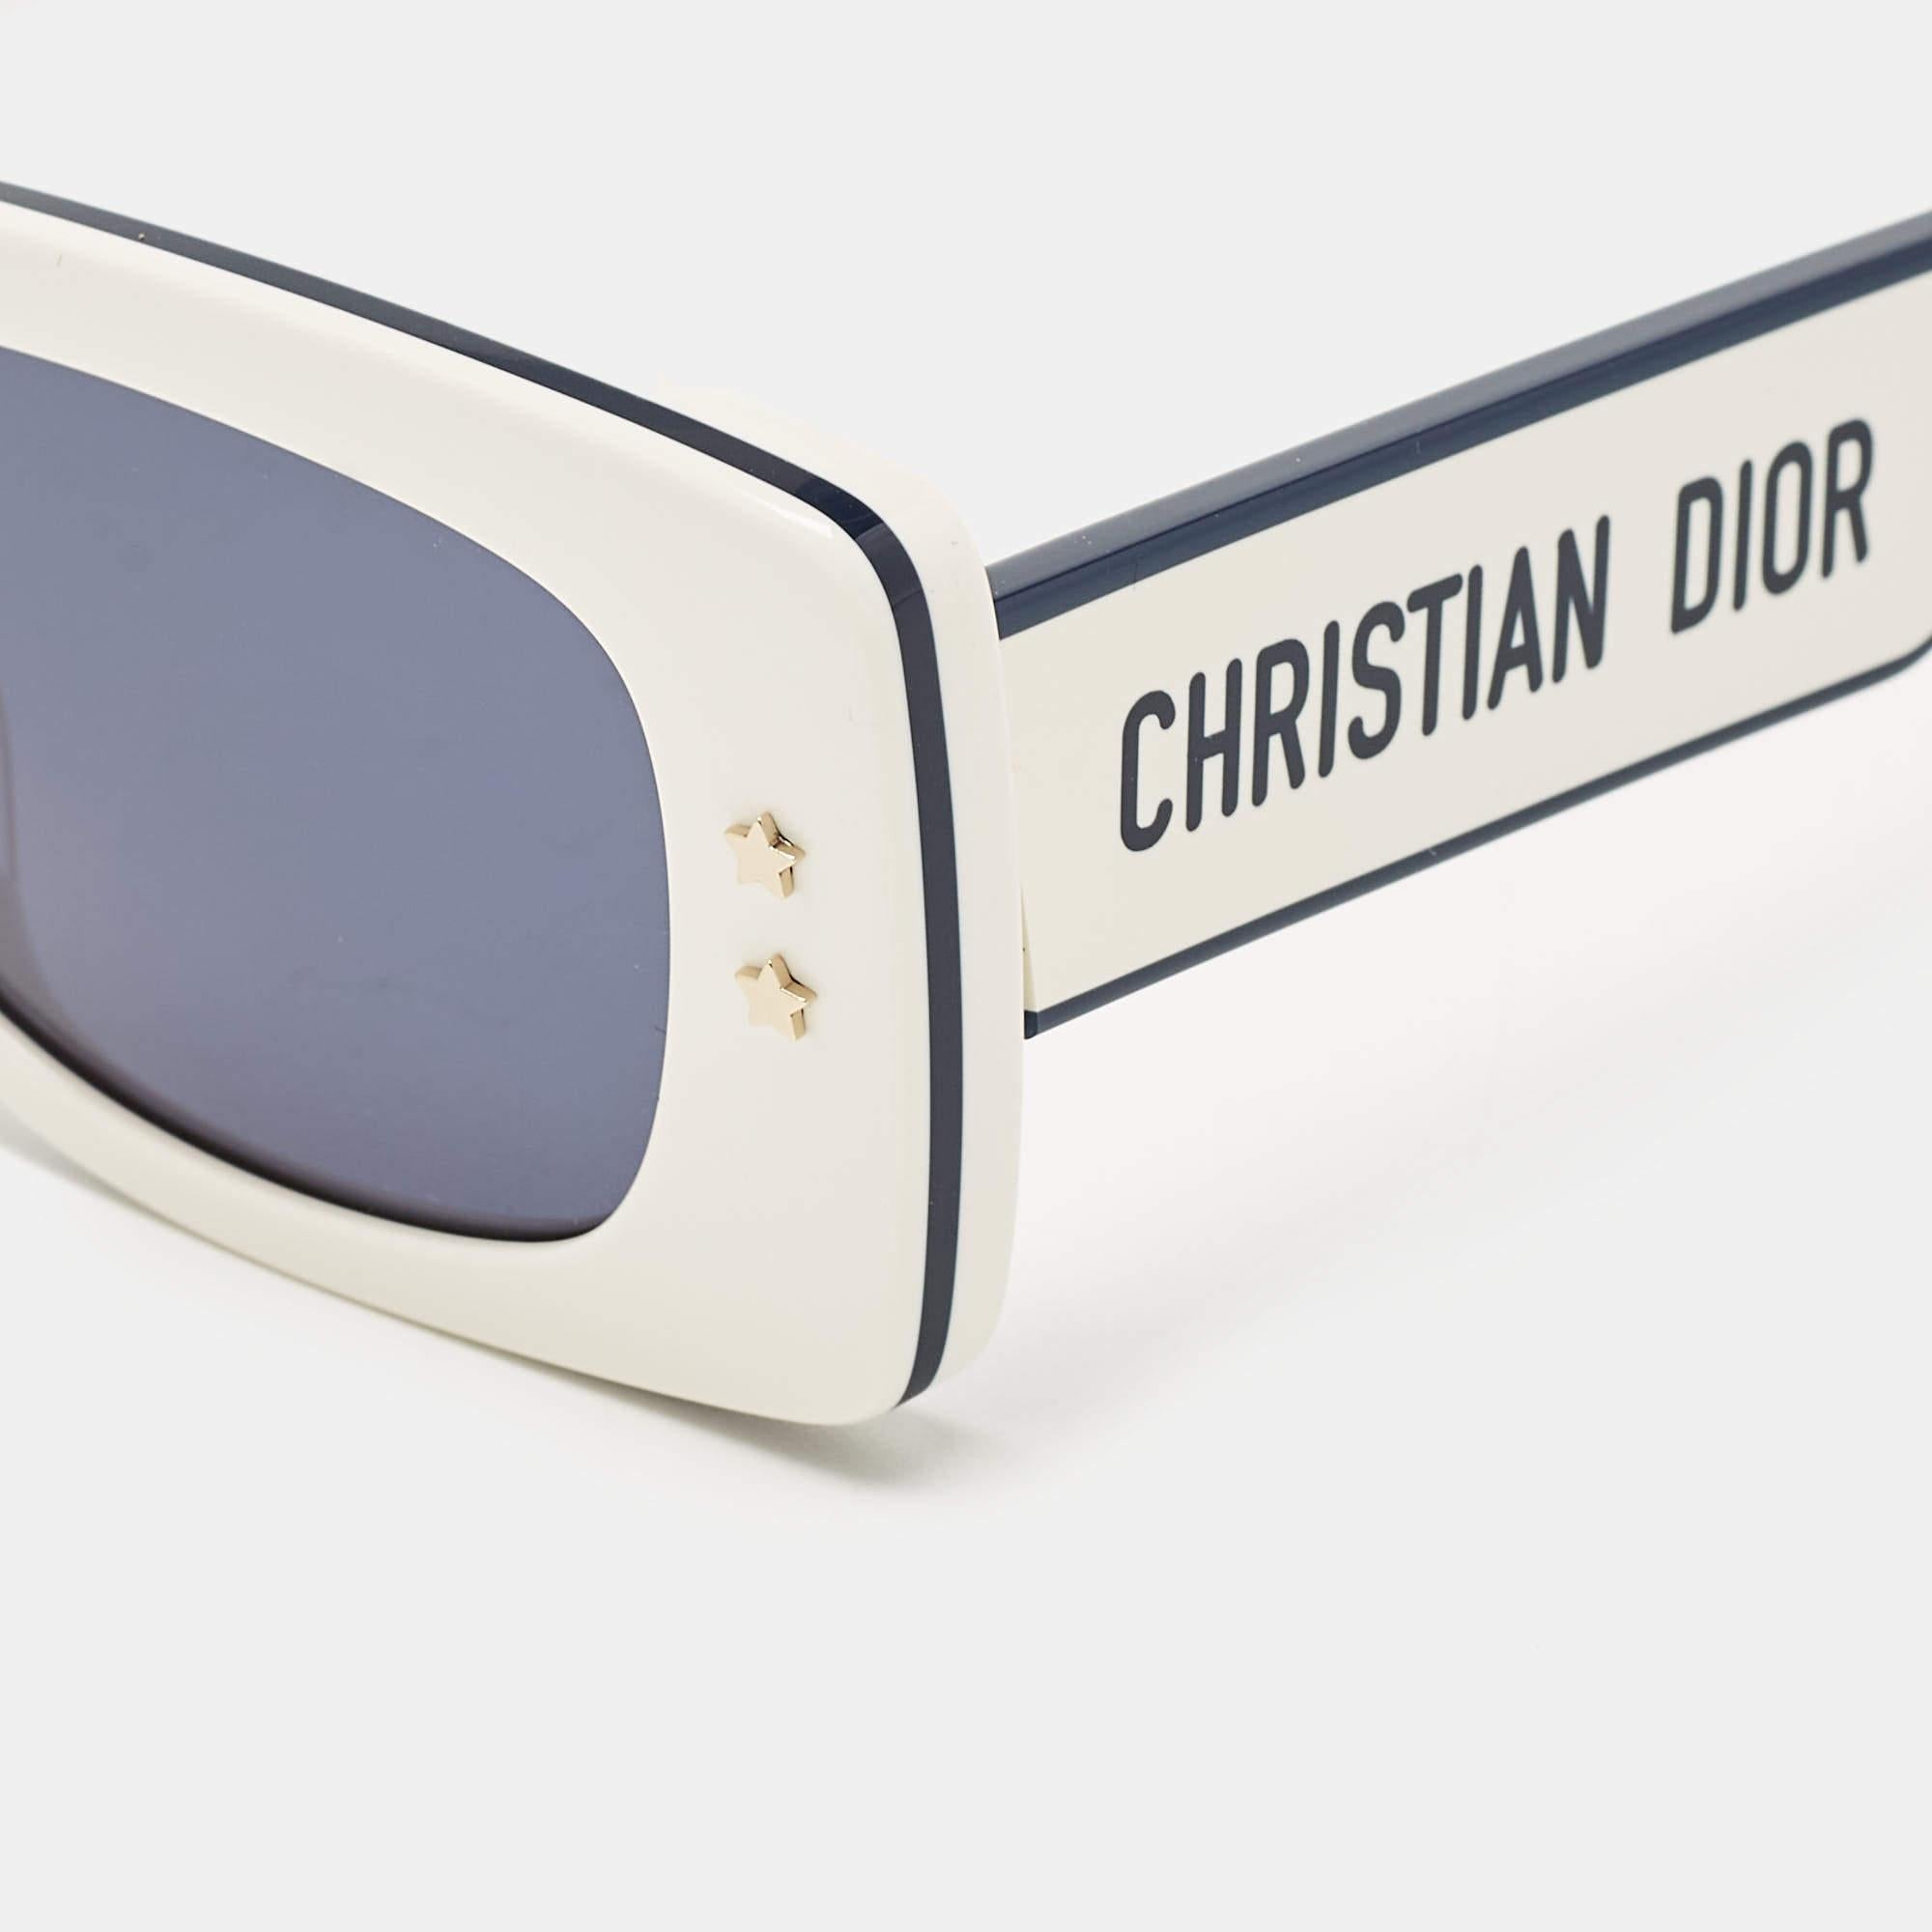 Cette paire de lunettes de soleil Dior est conçue pour les femmes qui ont un goût prononcé pour la mode. Compagnon idéal des sorties ensoleillées, il arbore des tempes de marque.

Longueur des branches : 140 mm
Taille du pont : 17 mm
Taille de l'œil